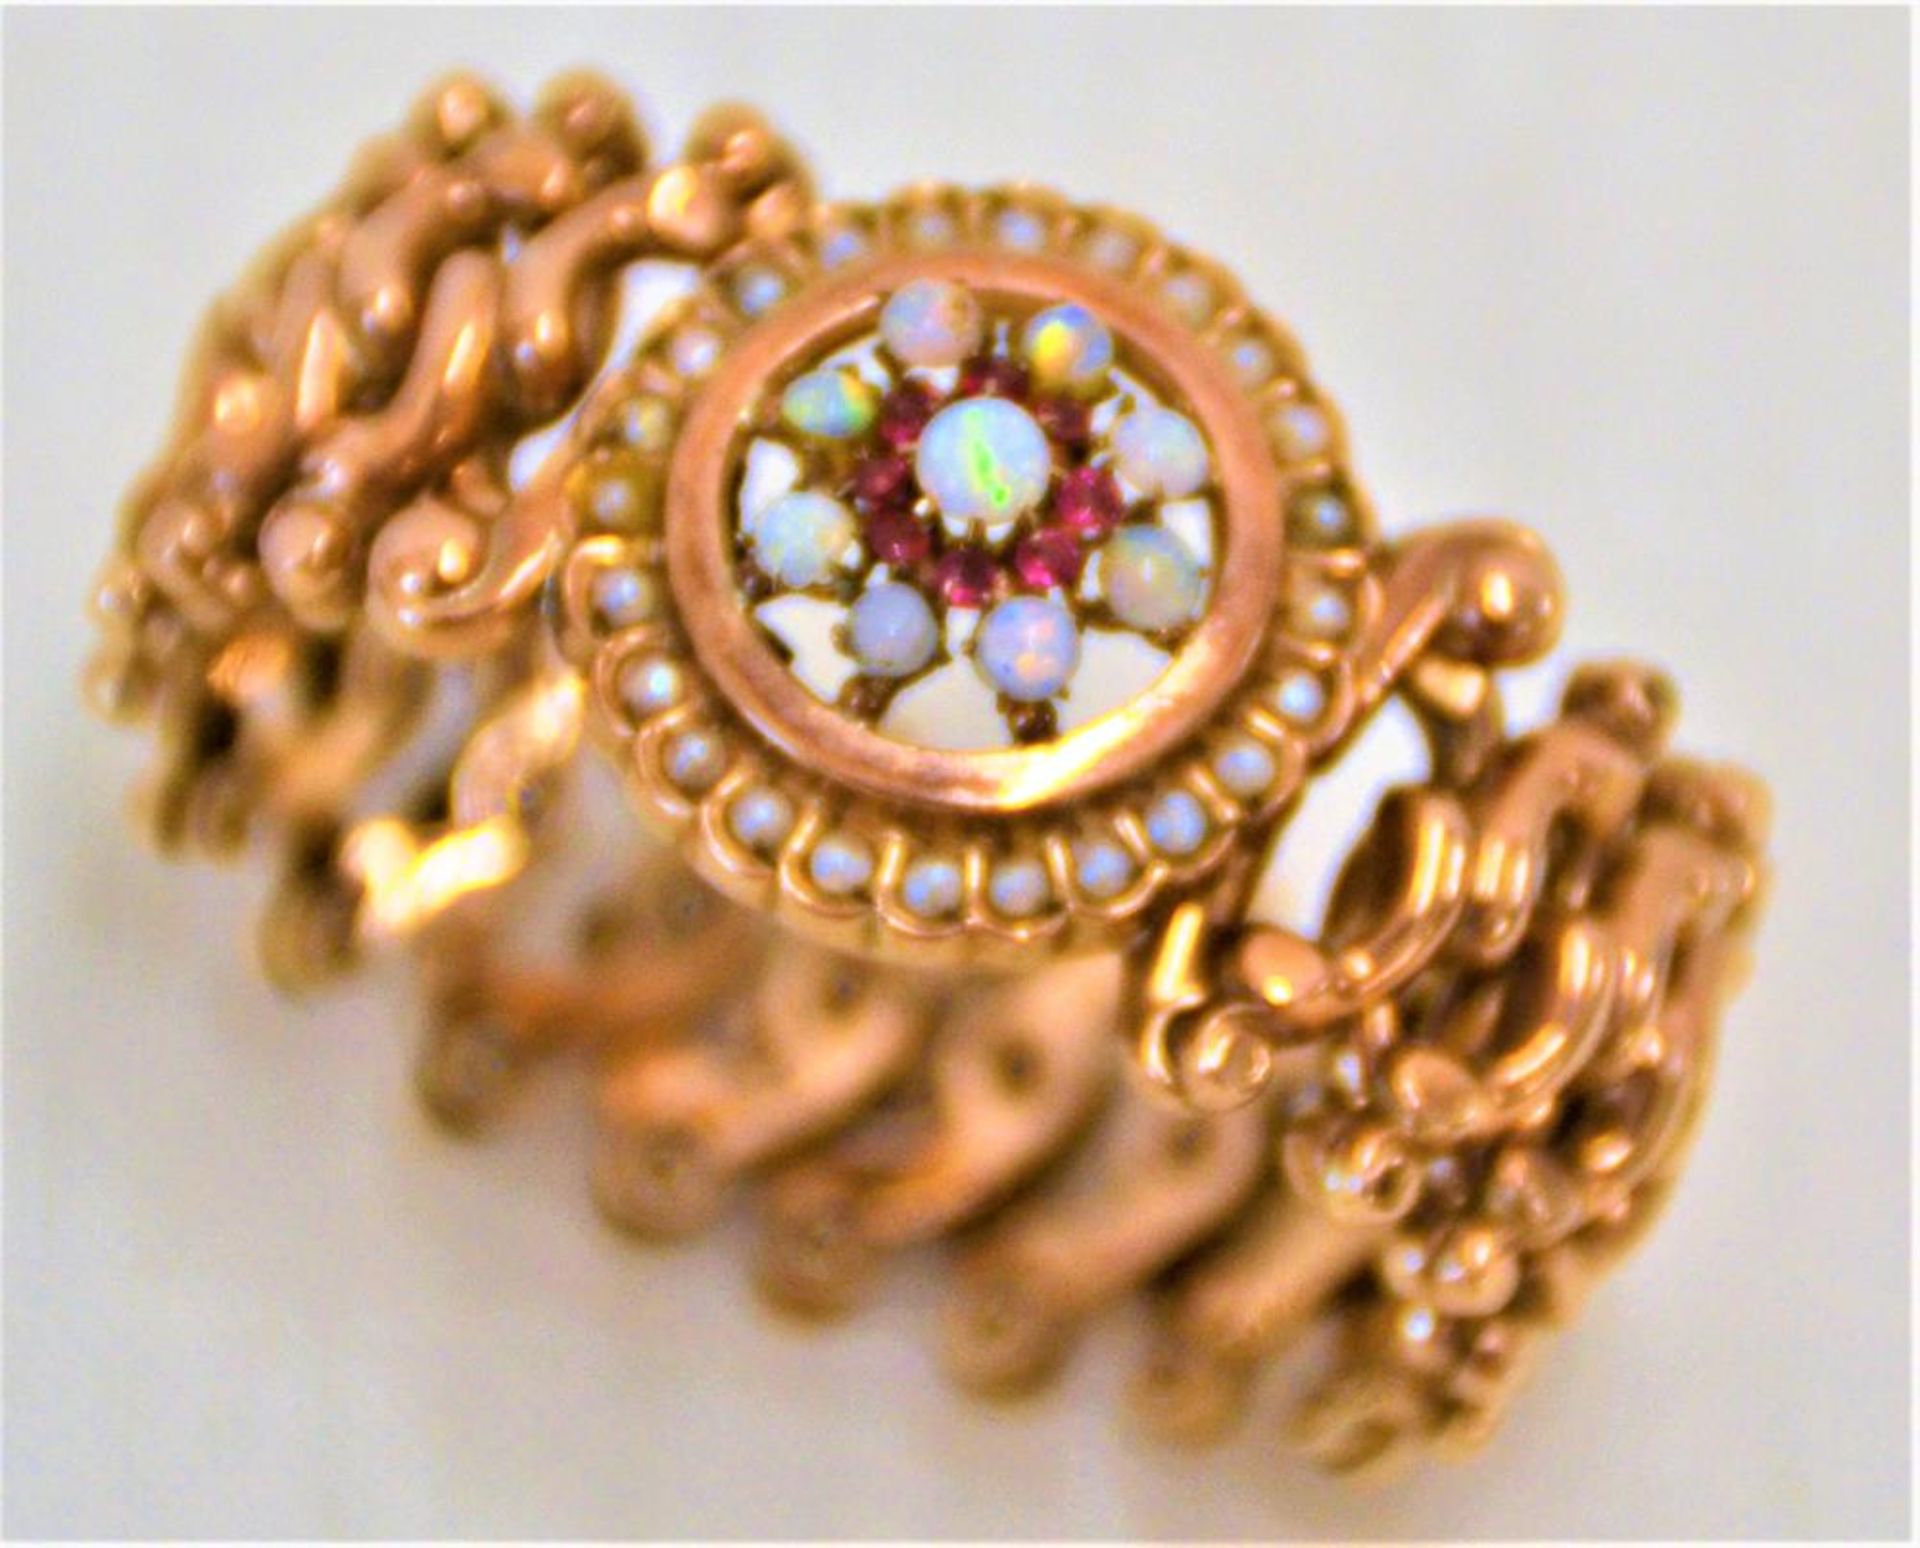 Ziehharmonika Armband 333 Gold um 1900 mit Opalen, Rubinen, Perlen (eine kleine Perle fehlt), 12,9